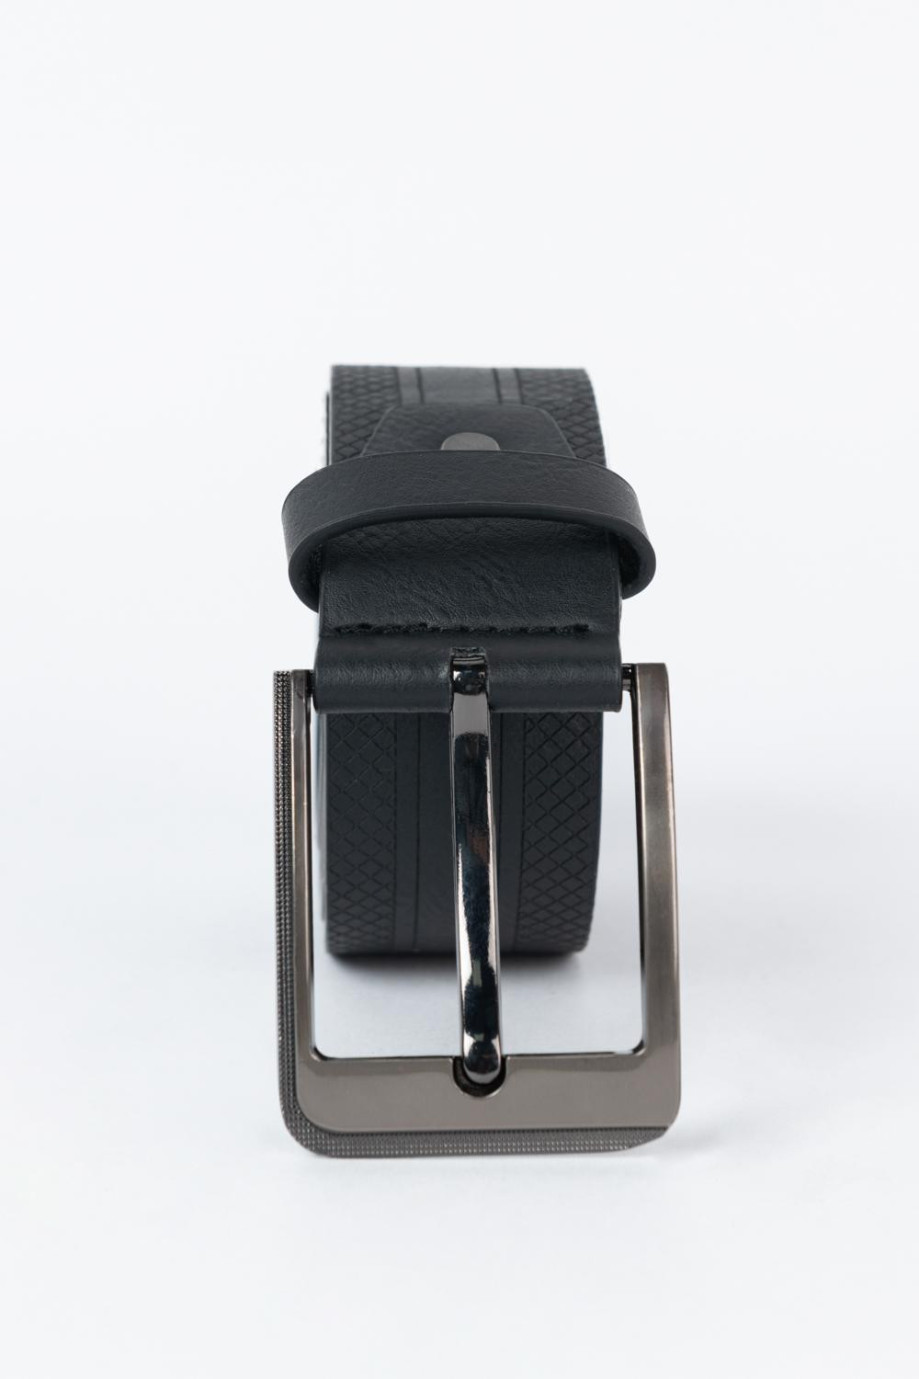 Cinturón negro con hebilla plateada cuadrada y texturas